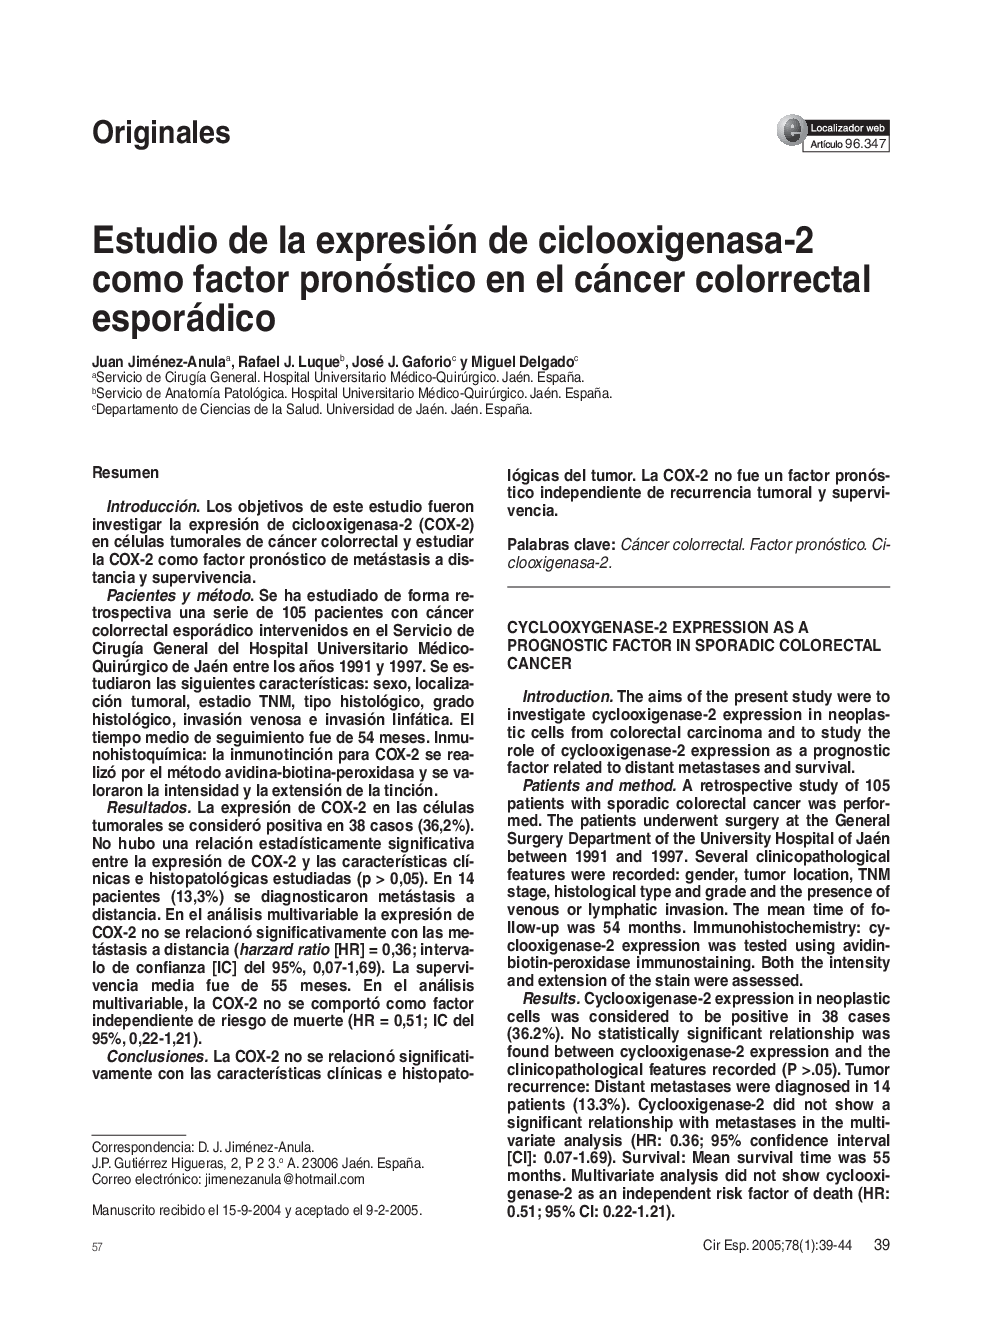 Estudio de la expresión de ciclooxigenasa-2 como factor pronóstico en el cáncer colorrectal esporádico